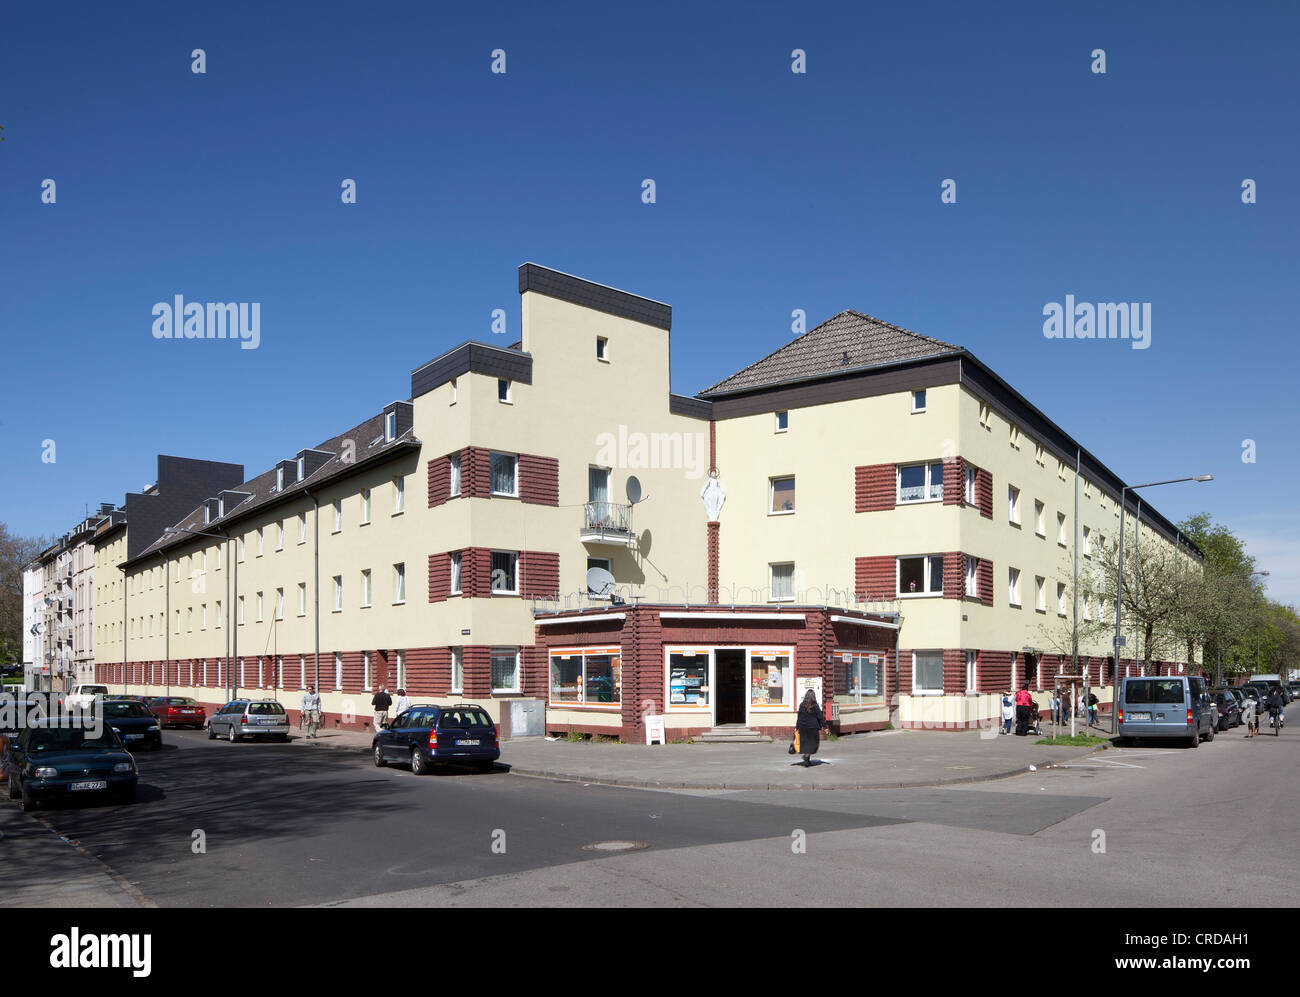 Talstrasse Wohnsiedlung, Aachen, Nordrhein-Westfalen, Deutschland, Europa, PublicGround Stockfoto